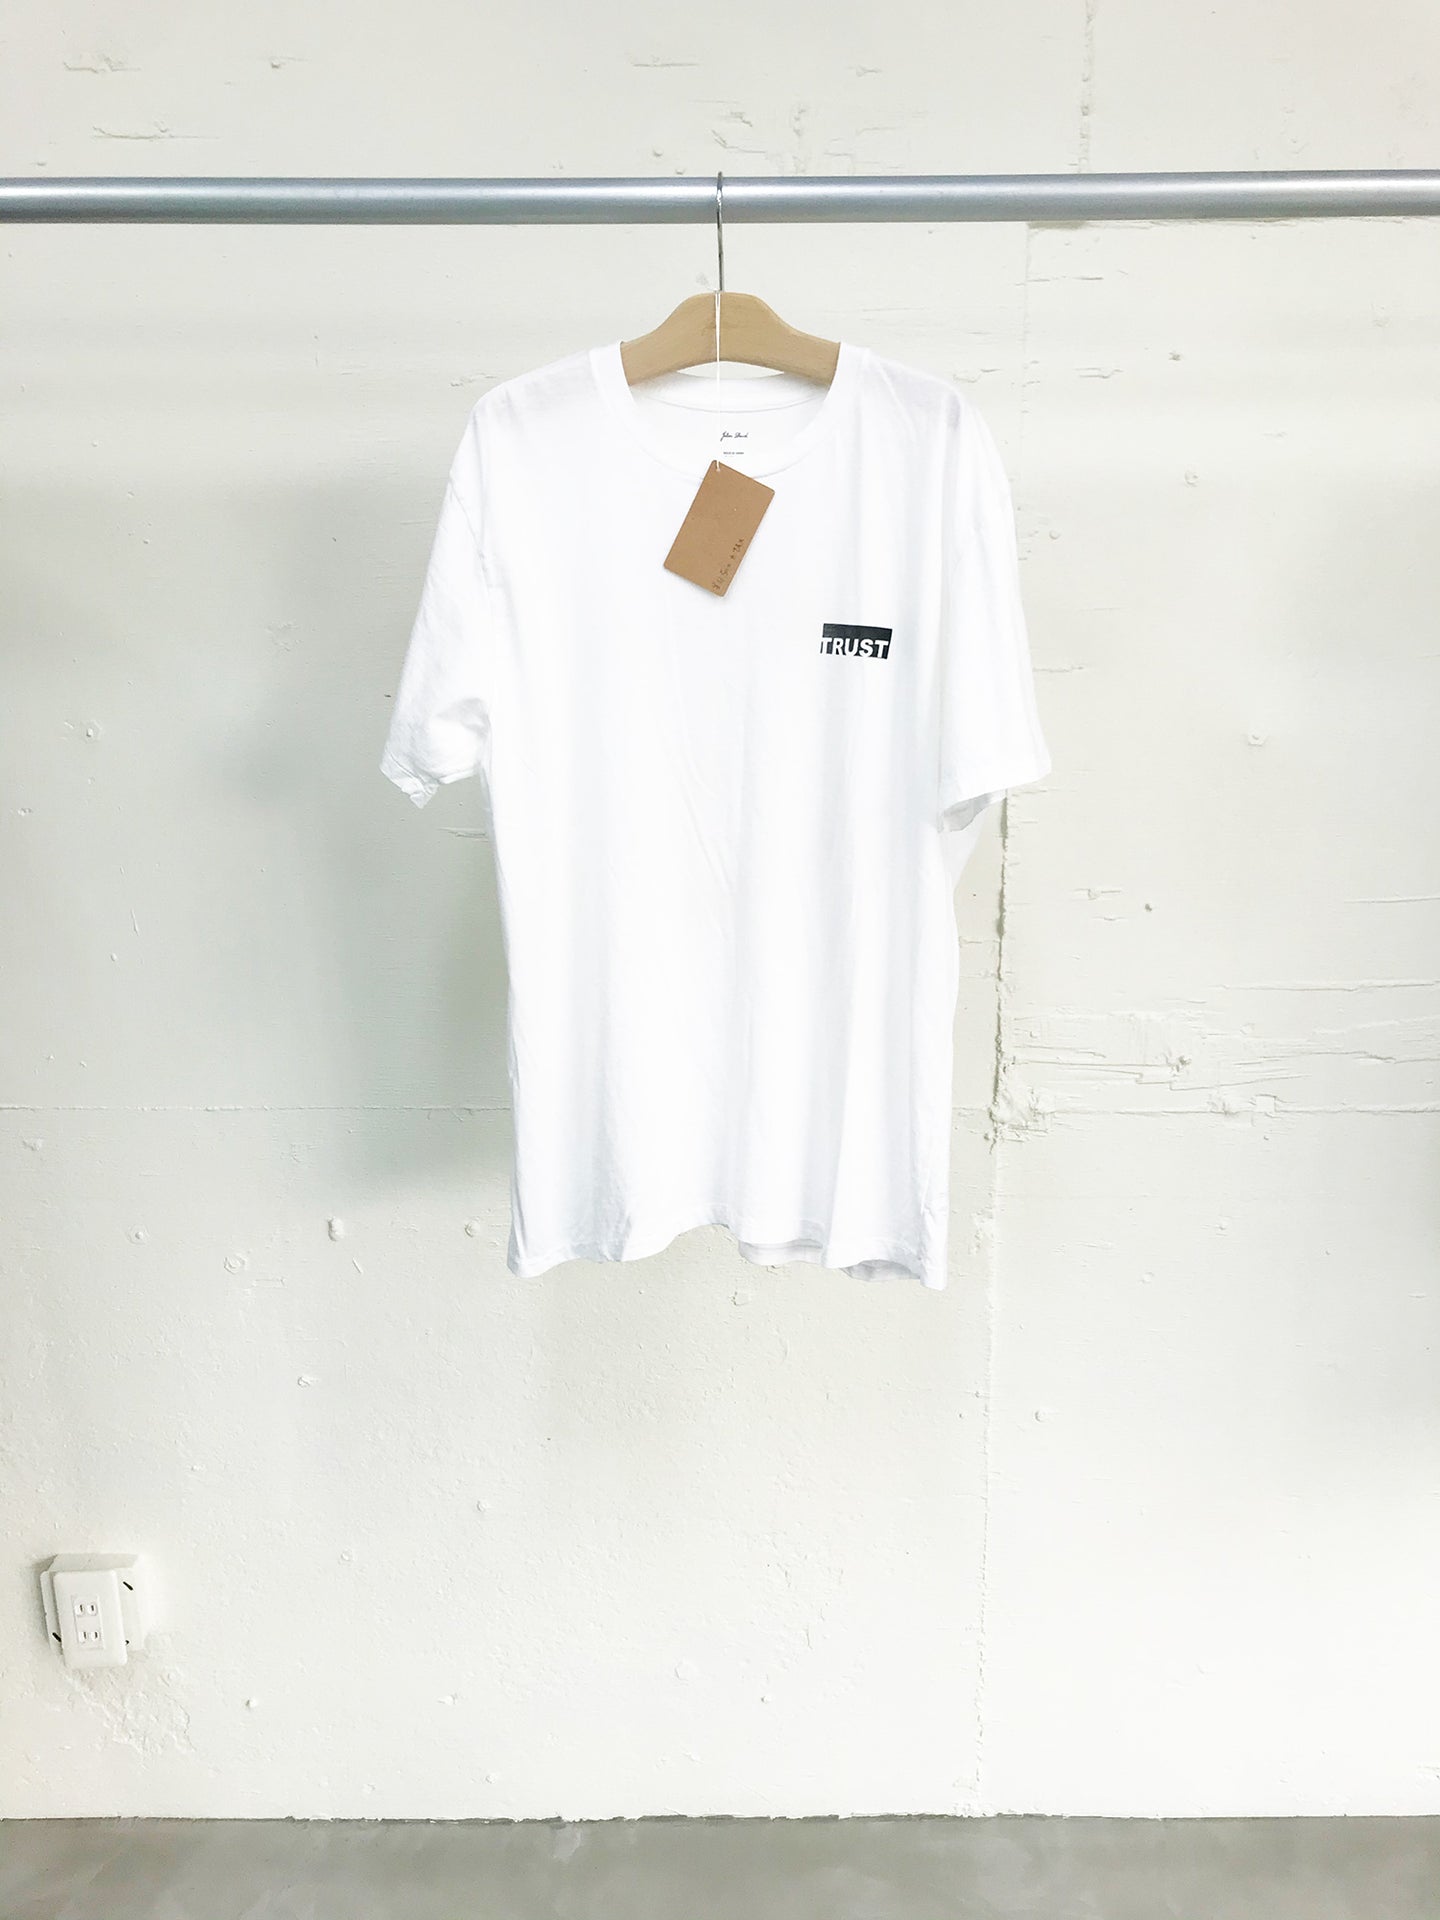 T9G Trust T-shirt (last stock)